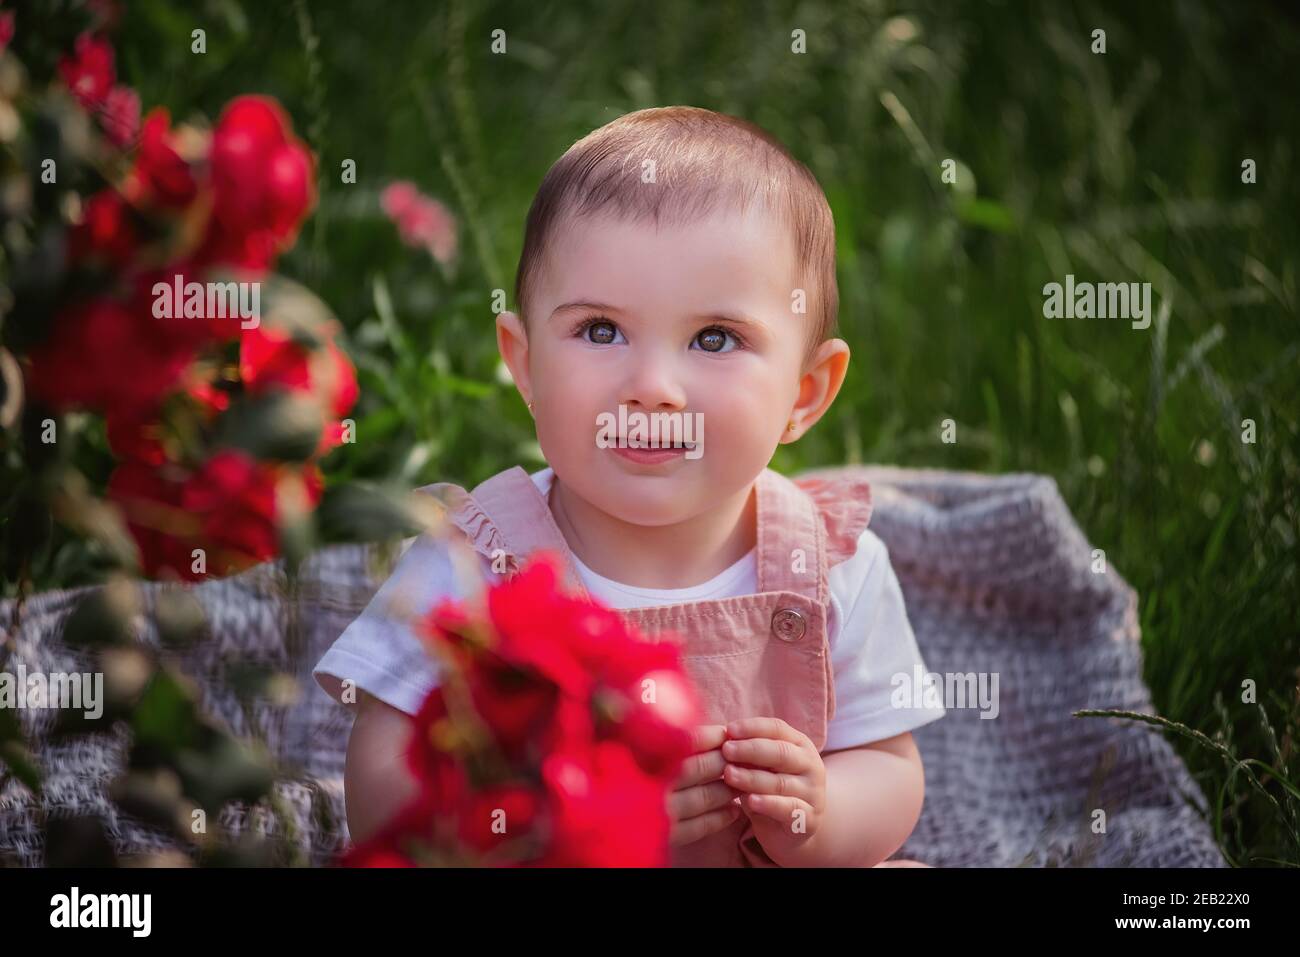 Un bambino si siede su un prato verde accanto alle rose rosse. Una ragazza felice in una tuta polverosa gode di una passeggiata nel parco, le aggrappano le mani, il sole è timido Foto Stock